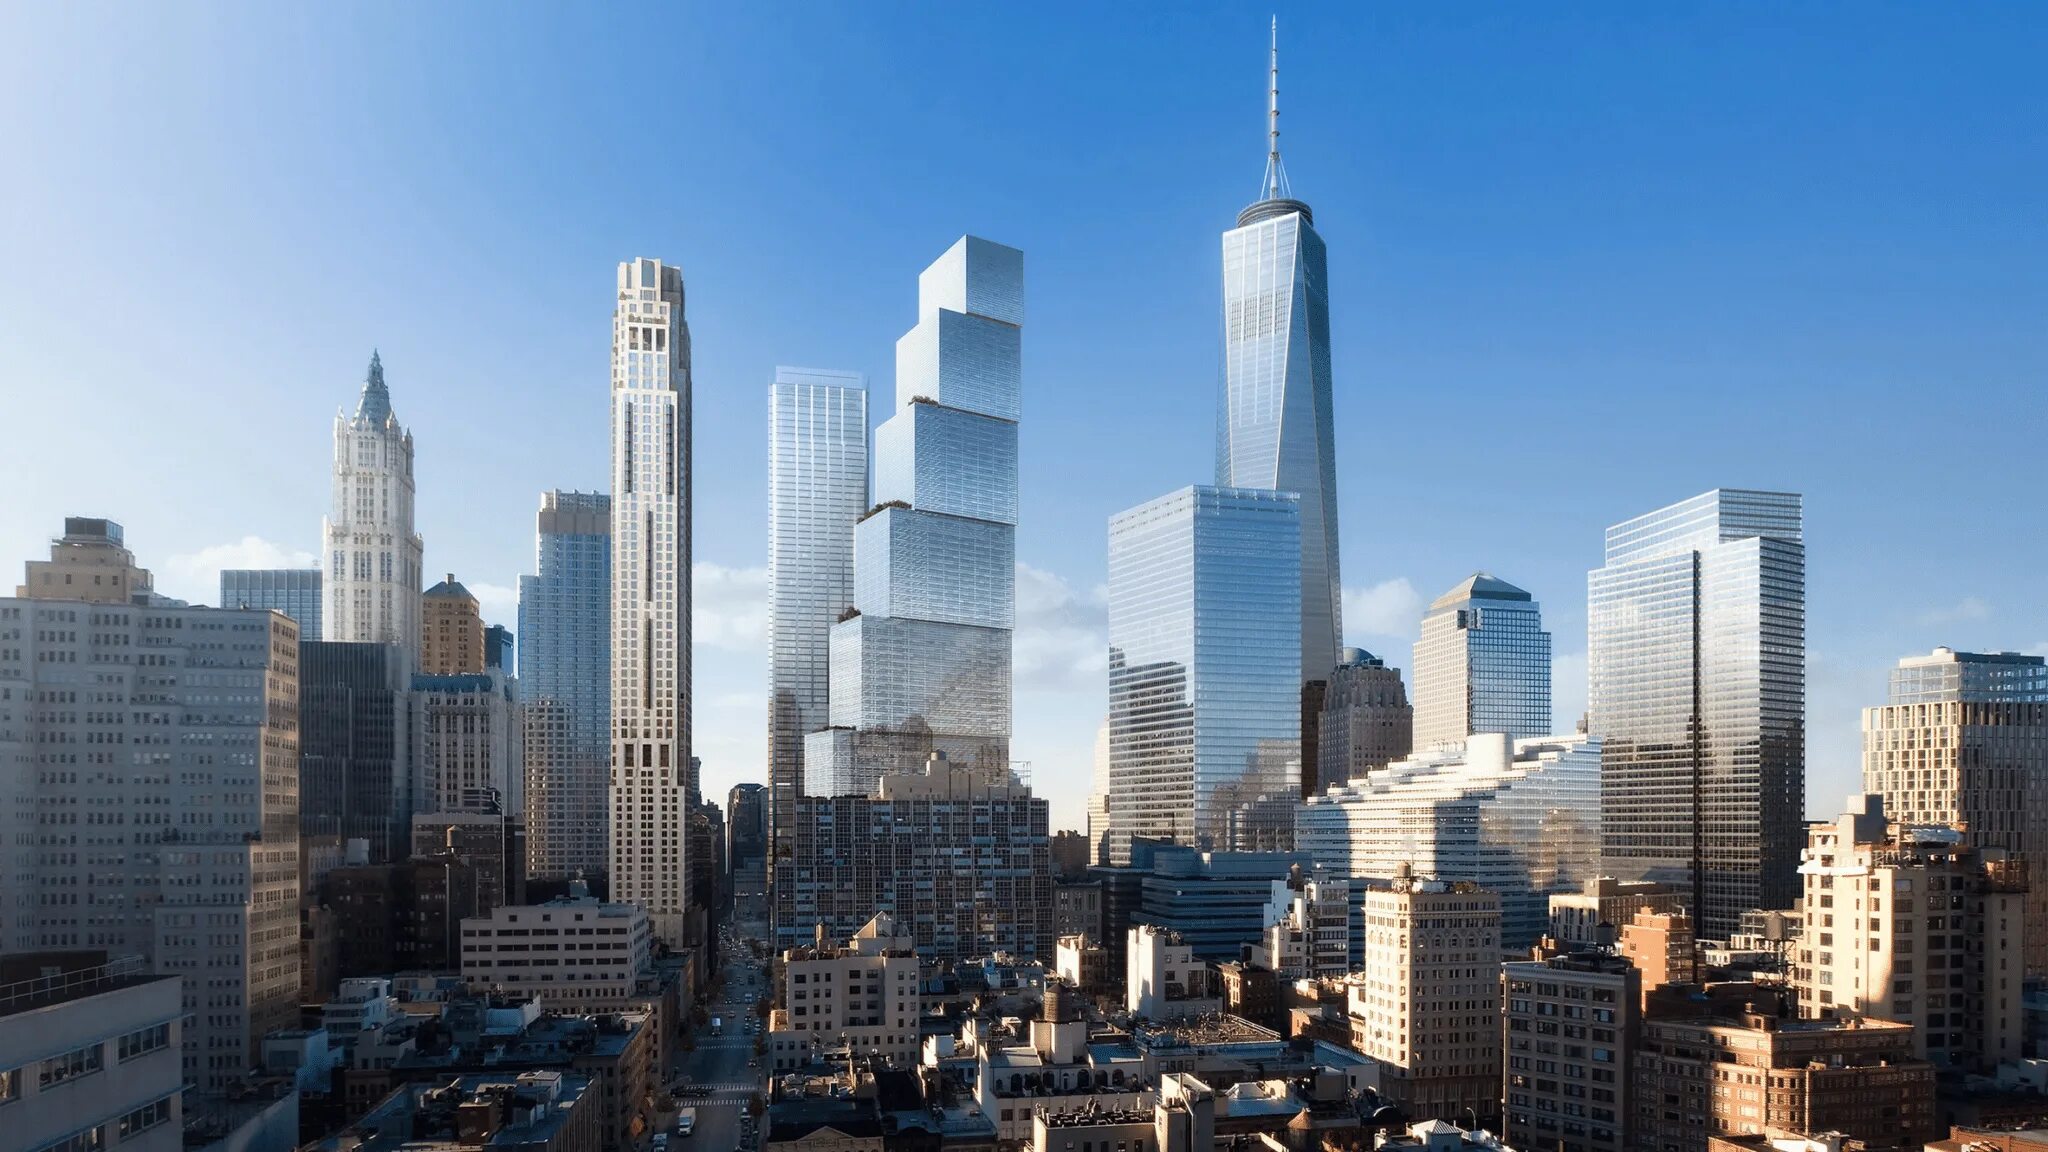 One world new york. ВТЦ Нью-Йорк. Всемирный торговый центр в Нью-Йорке. Нью Йорк небоскреб Всемирный торговый центр. ВТЦ Нью-Йорк 2020.